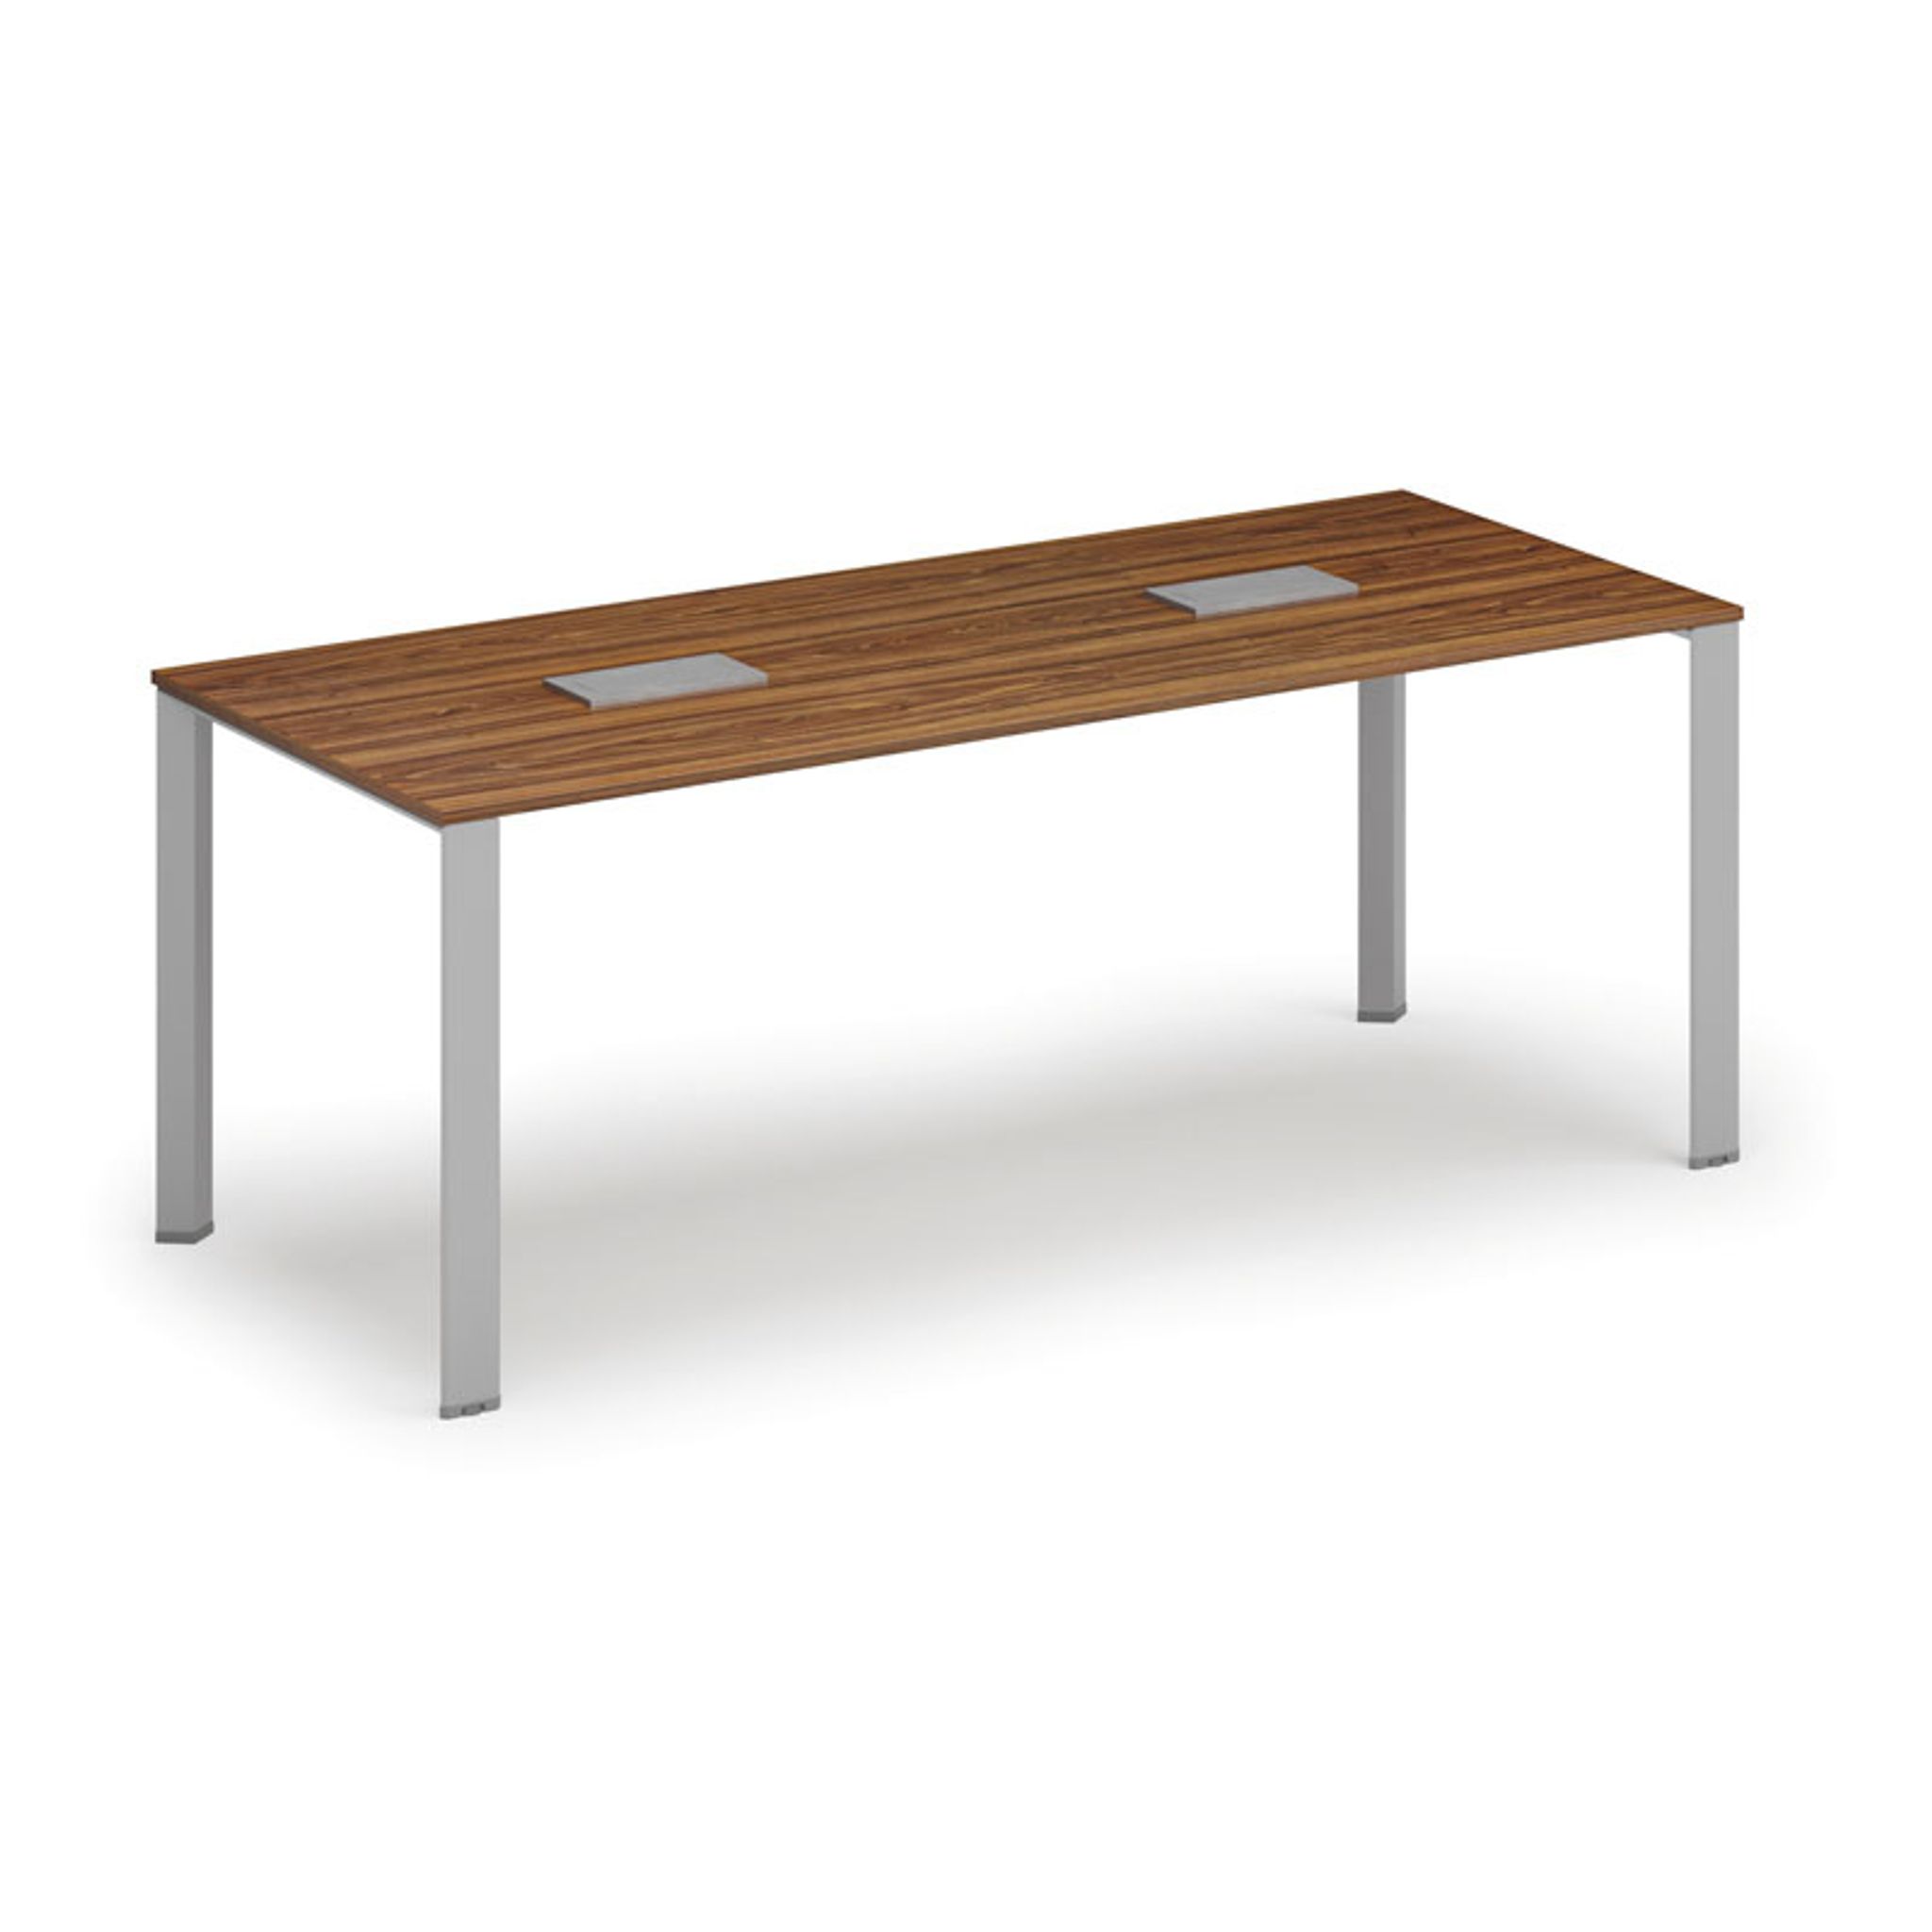 Stůl INFINITY 2000 x 900 x 750, ořech + 2x stolní zásuvka TYP I, stříbrná